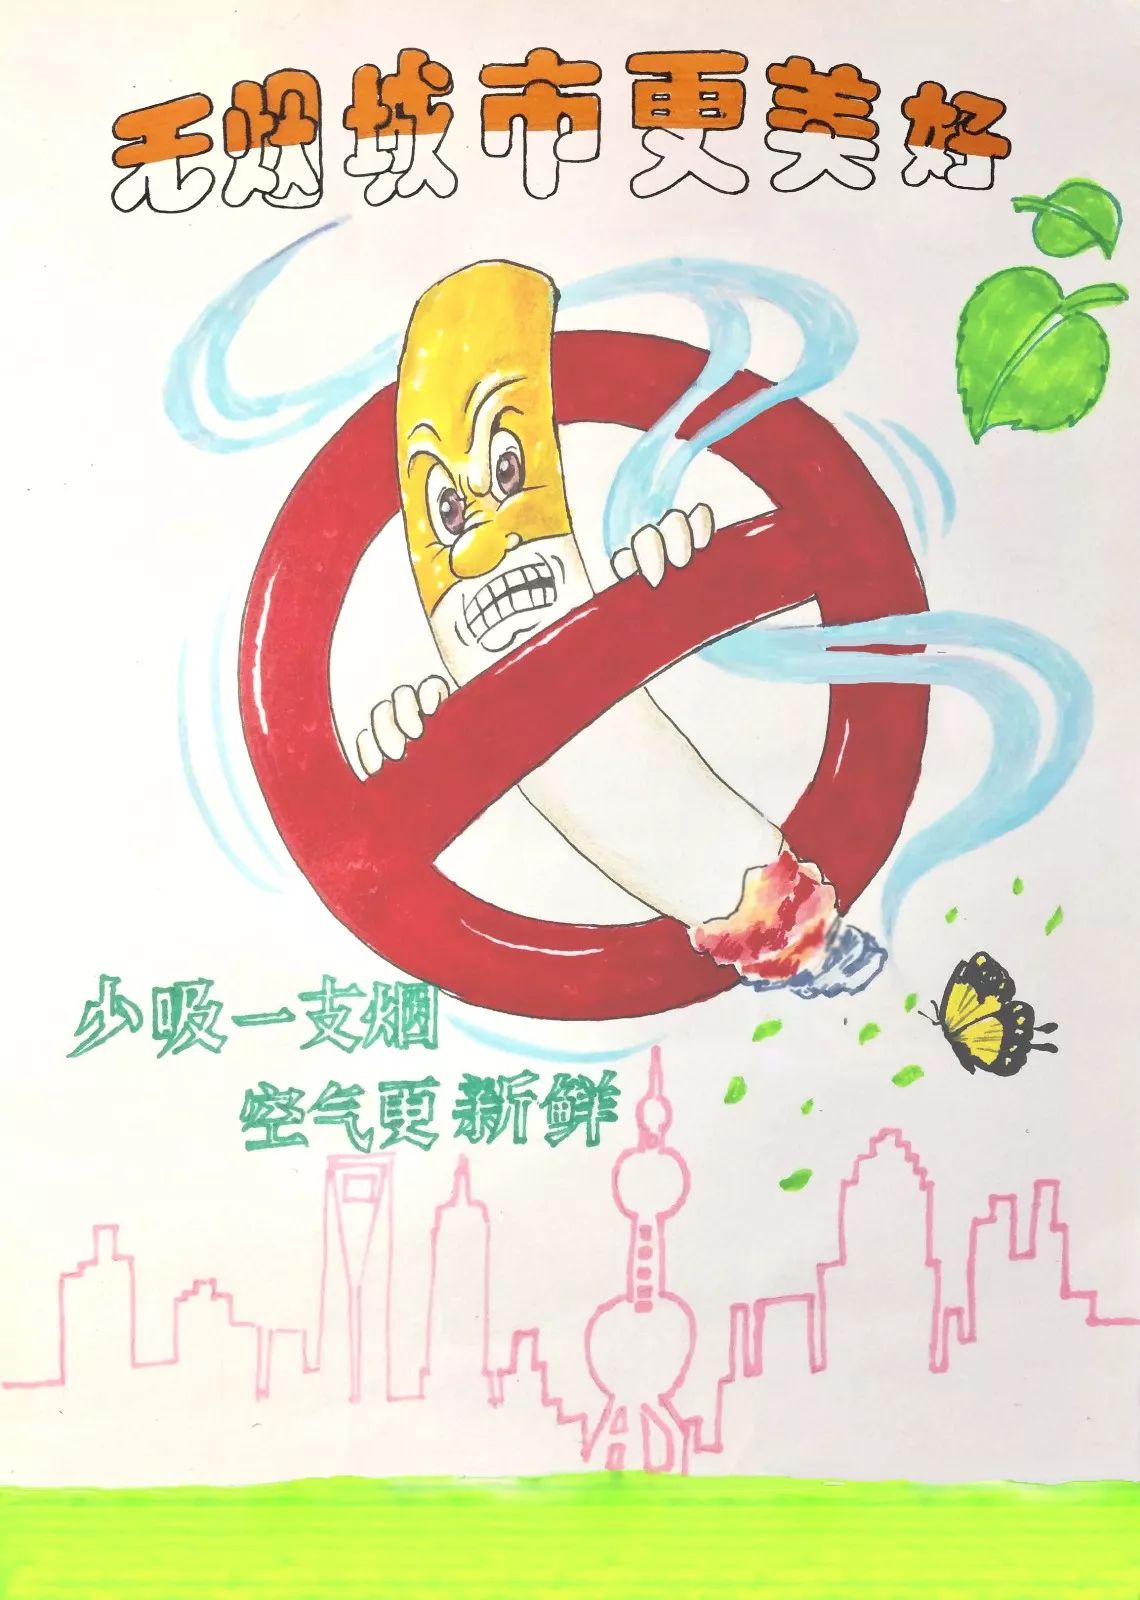 儿童禁烟宣传画 简化图片